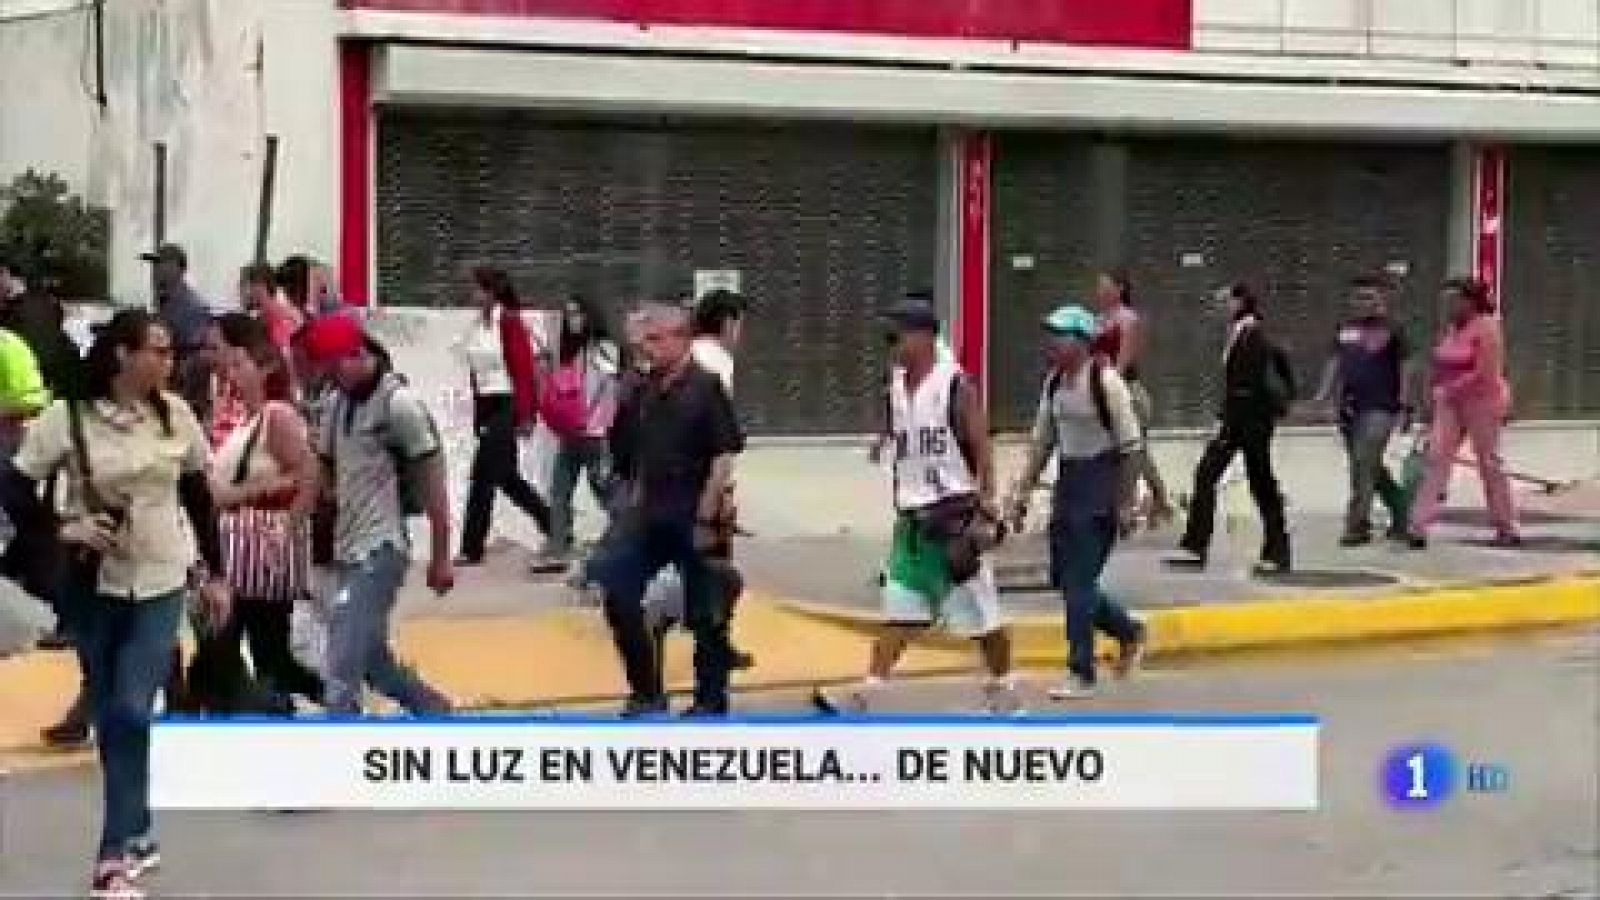 Venezuela sufre un nuevo apagón masivo tras cuatro meses sin uno